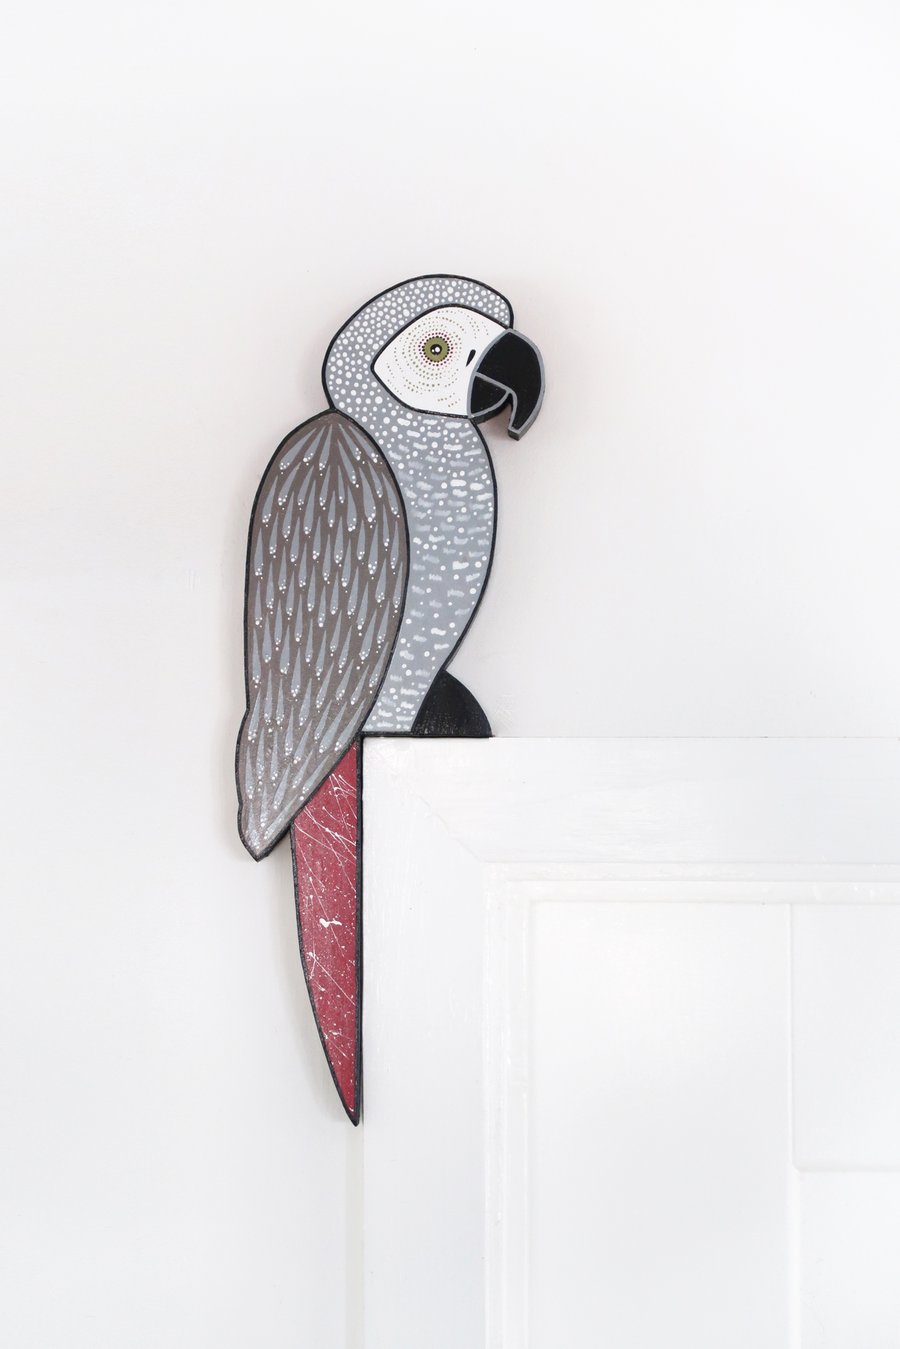 African grey parrot door topper, wooden tropical bird decoration for door.